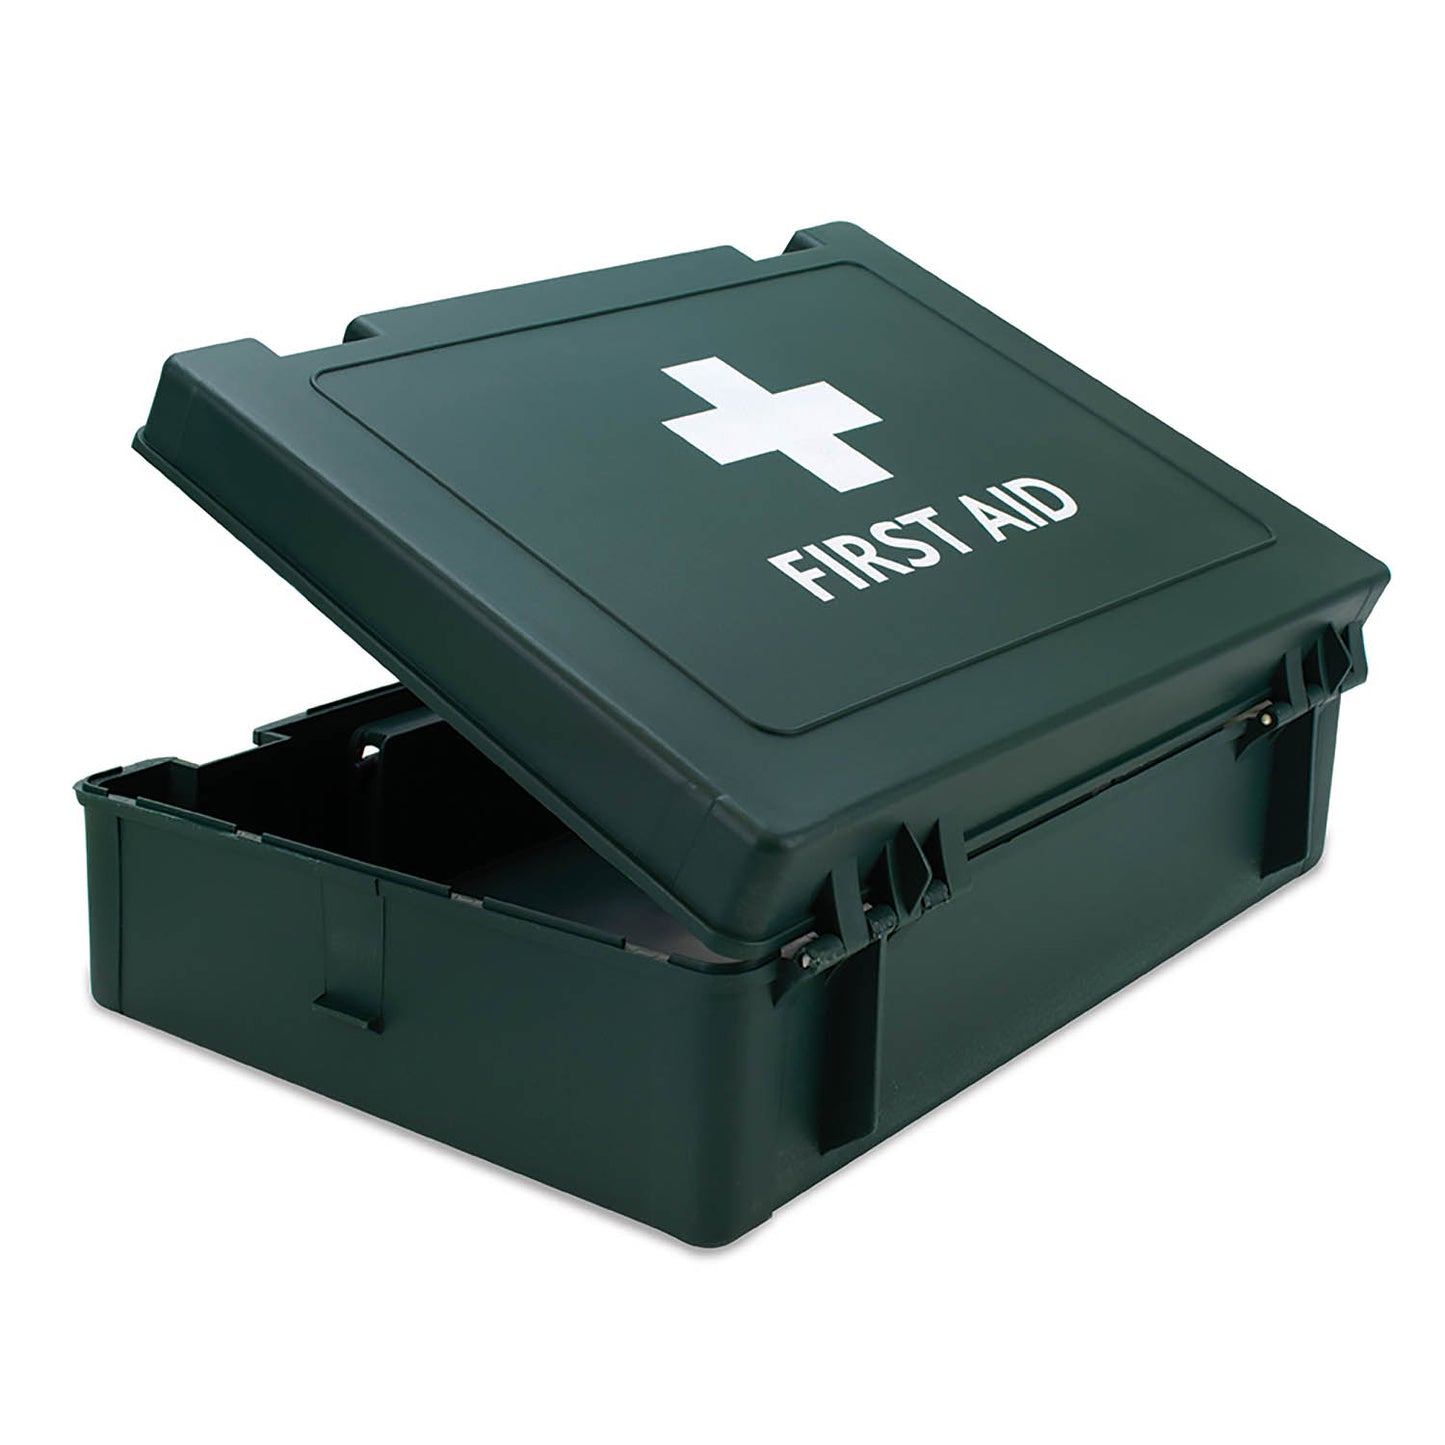 Cambridge Economy Empty First Aid Box - 25.5 x 34.5 x 10cm